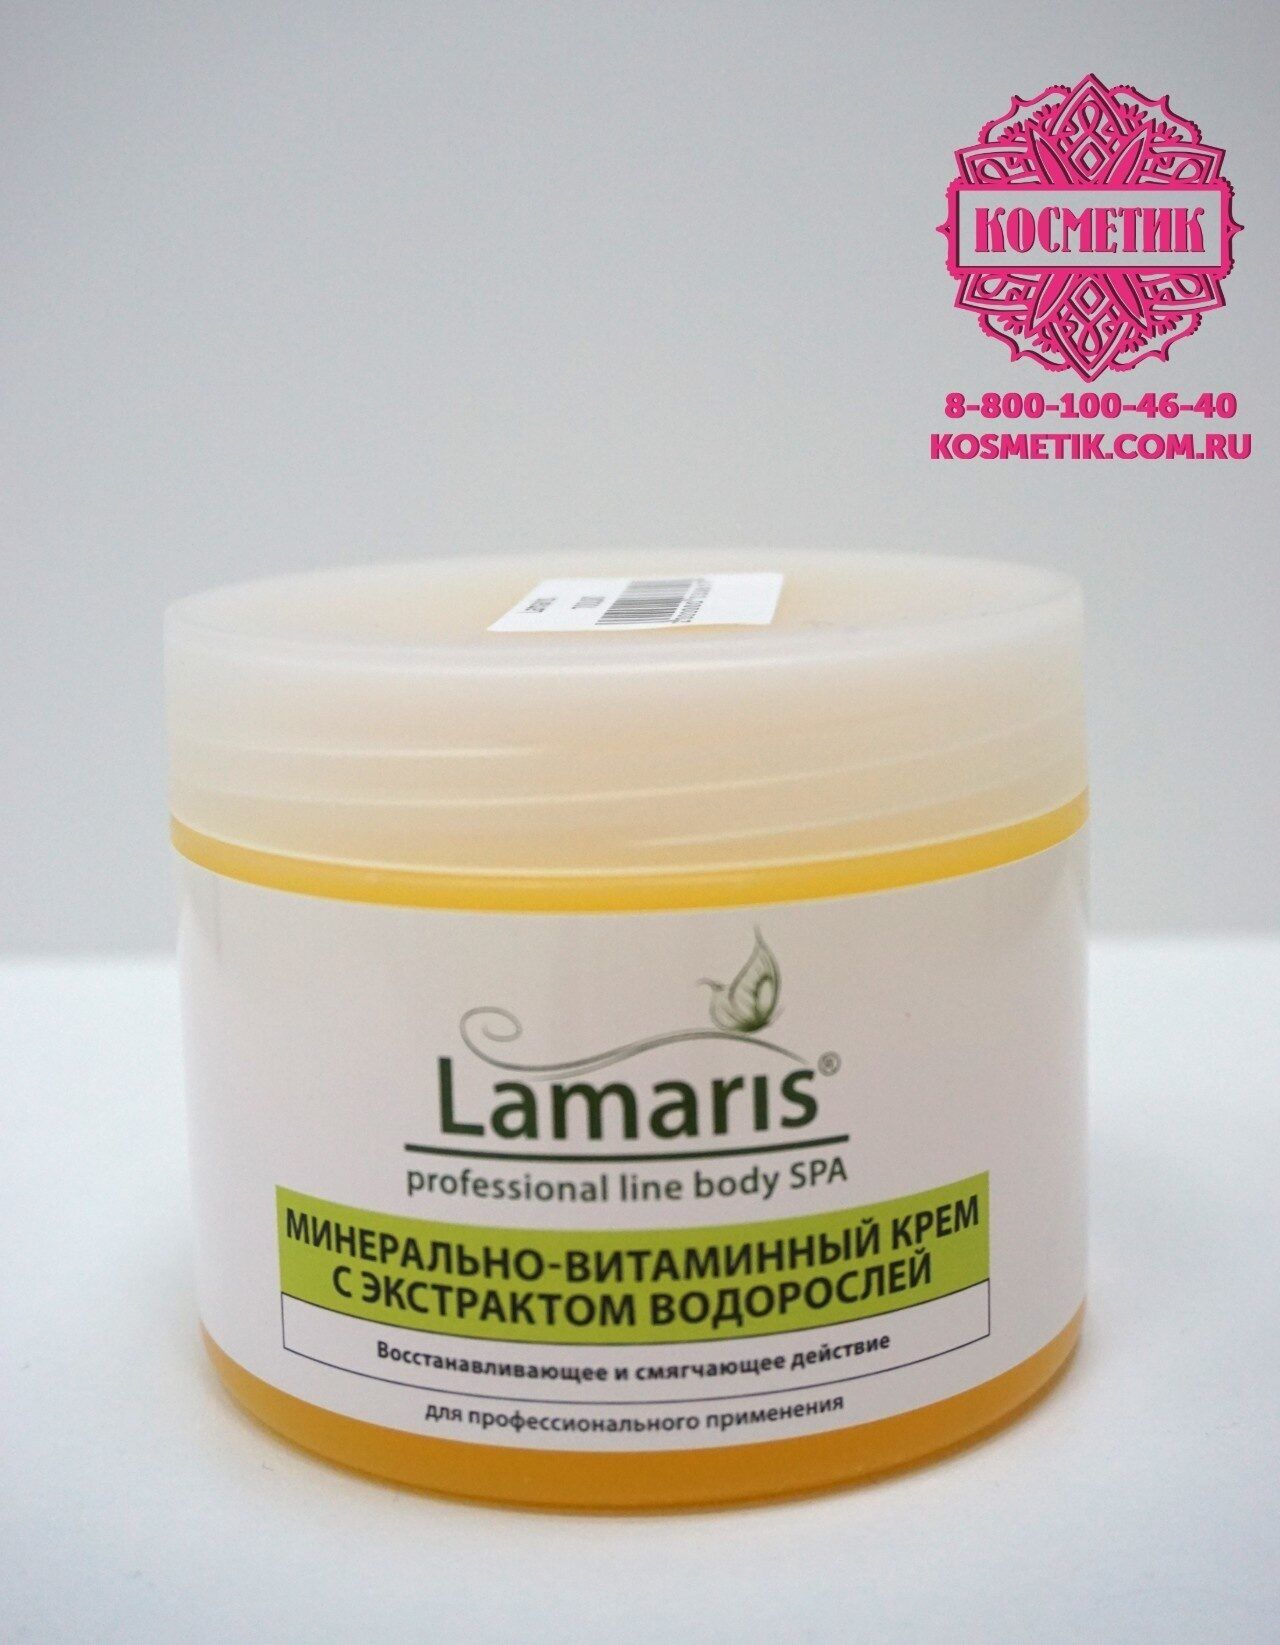 Lamaris, Минерально-витаминный крем с экстрактом водорослей, 300мл Россия